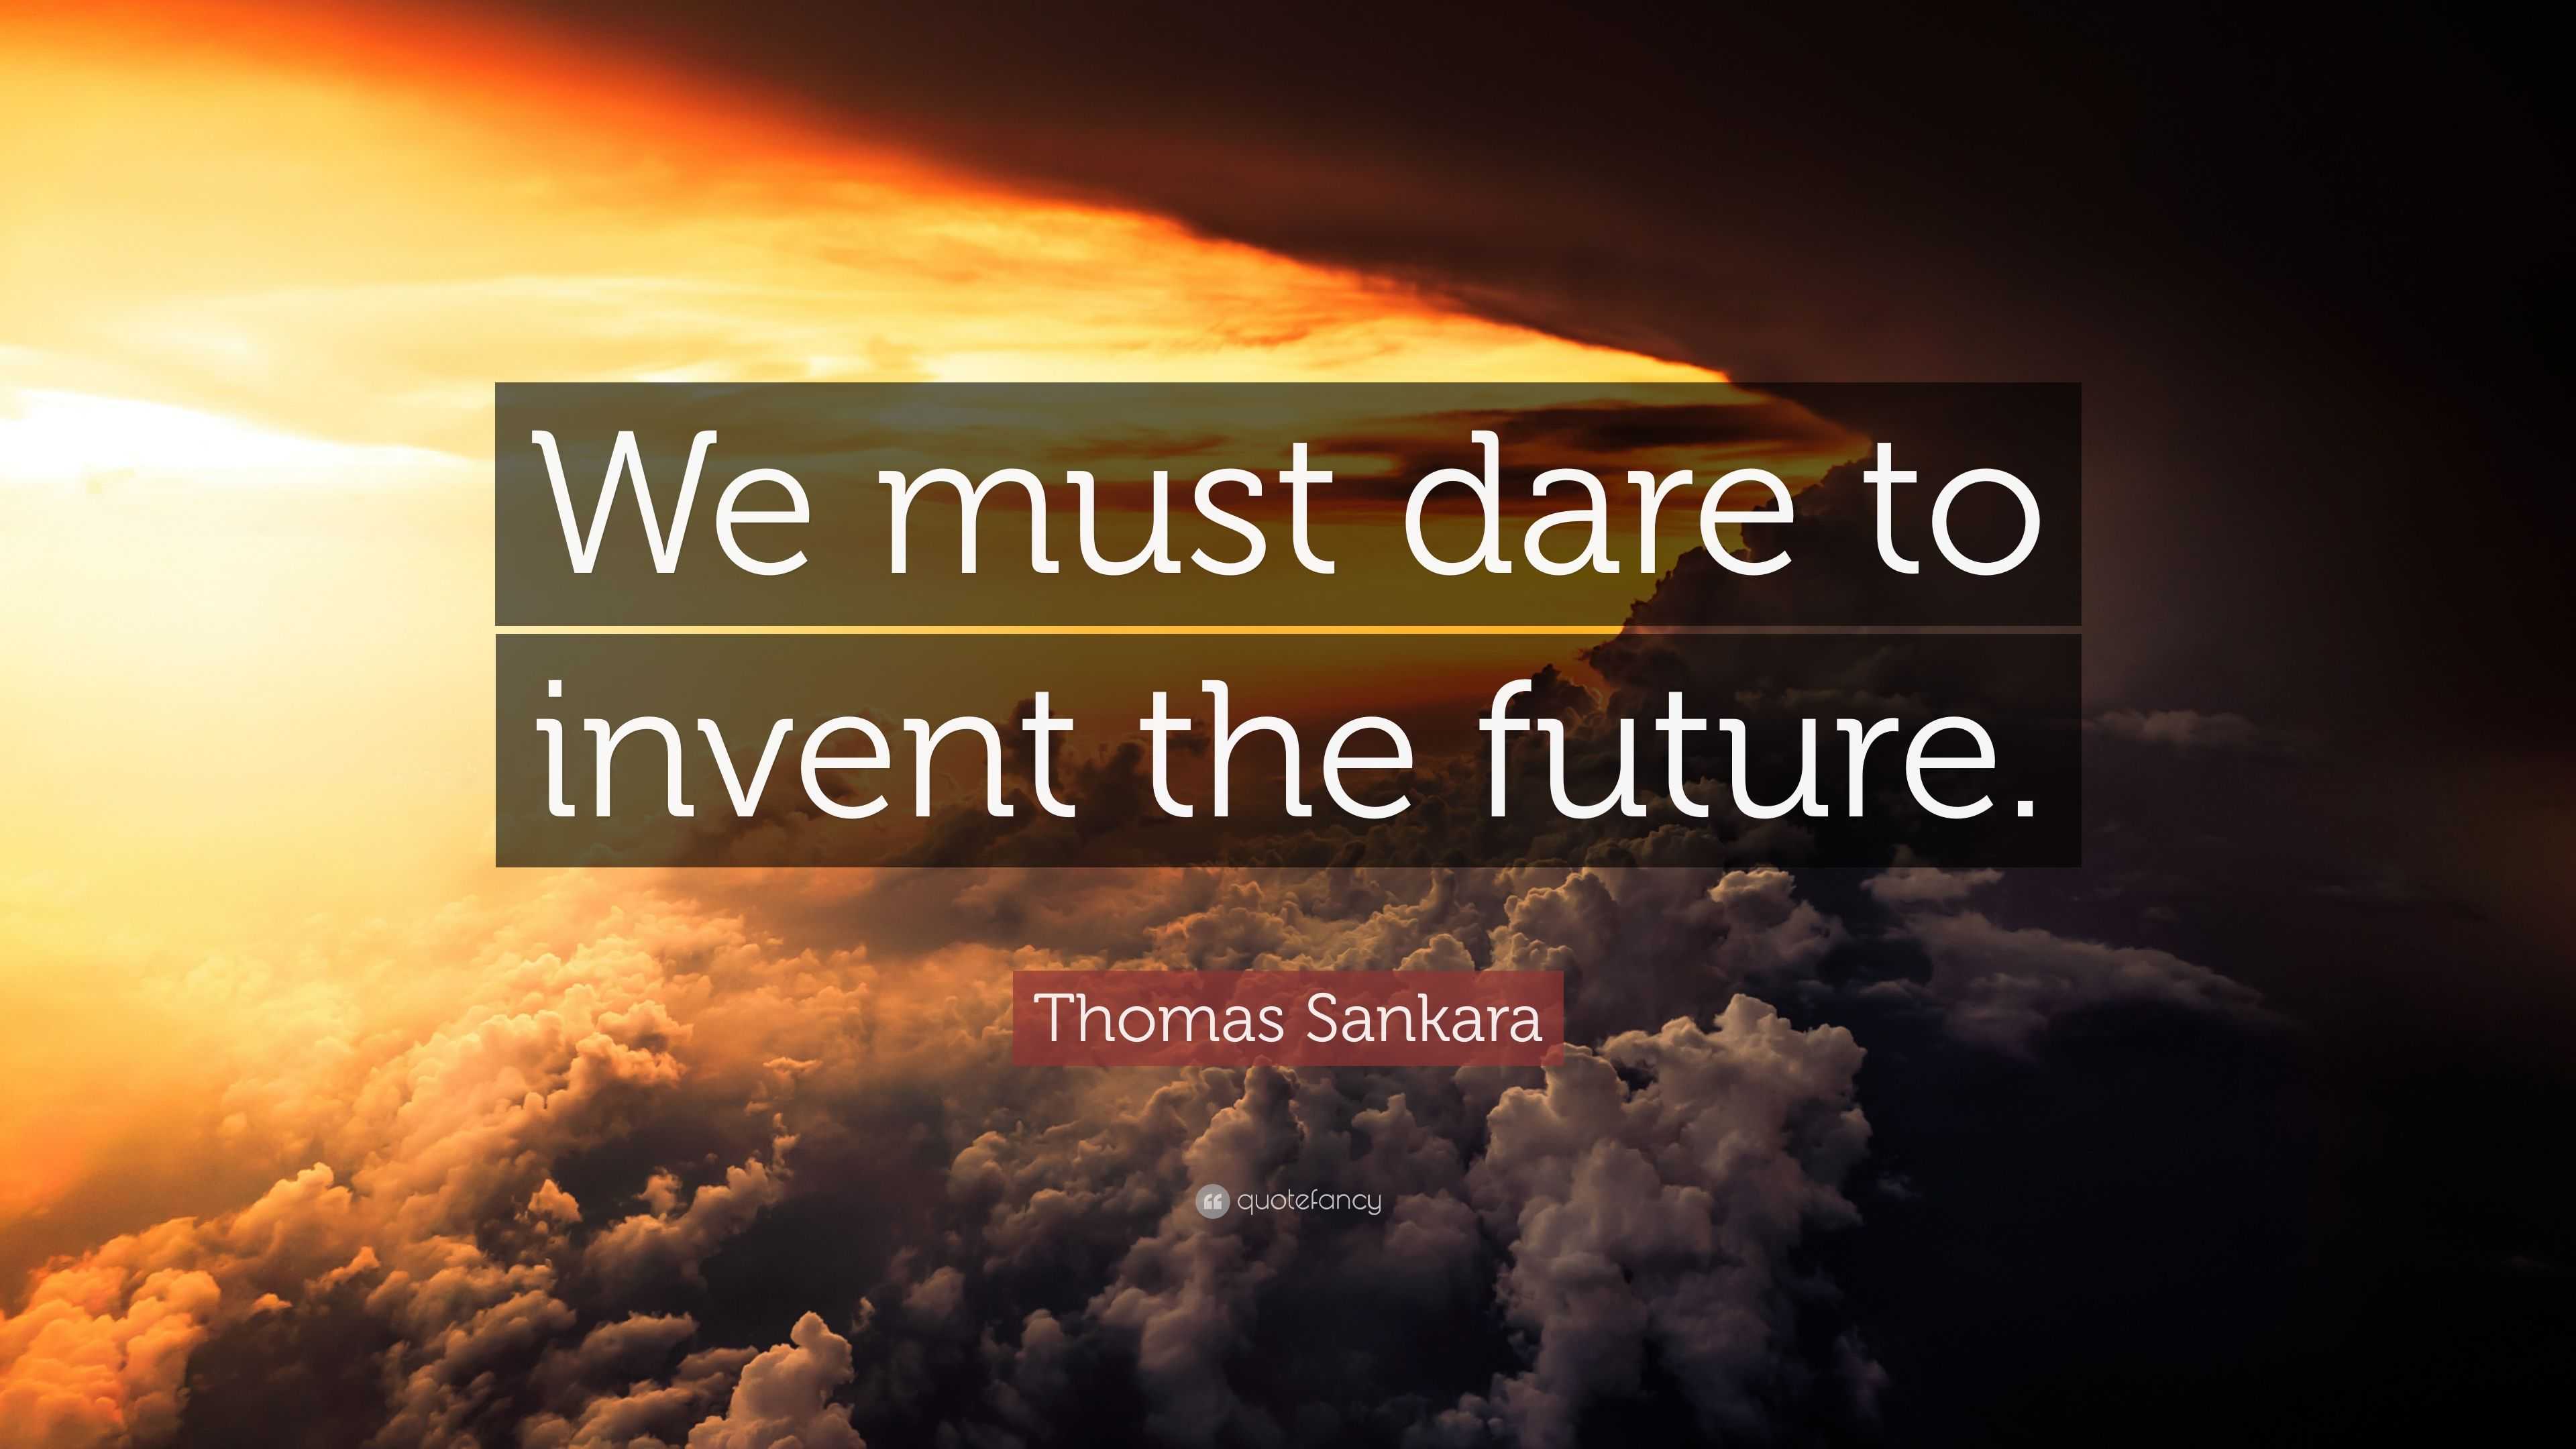 Dare to Invent the Future